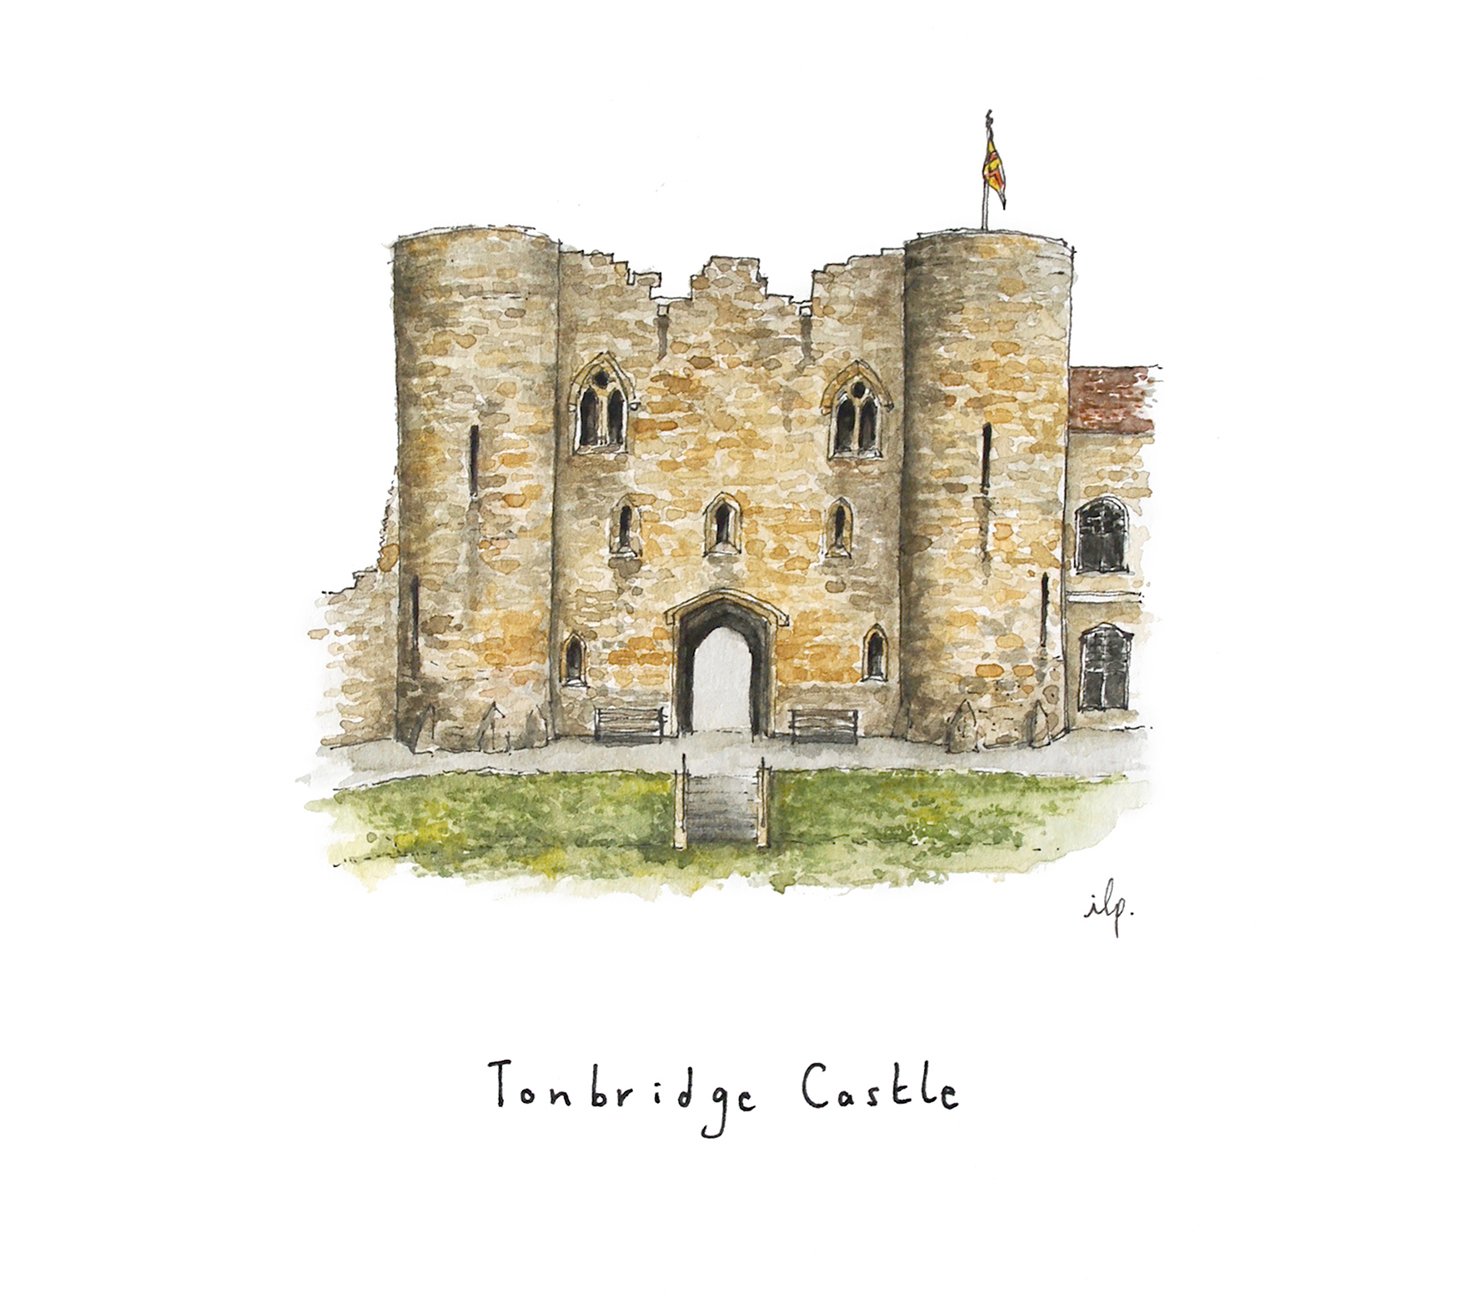 Tonbridge Castle Building Illustration